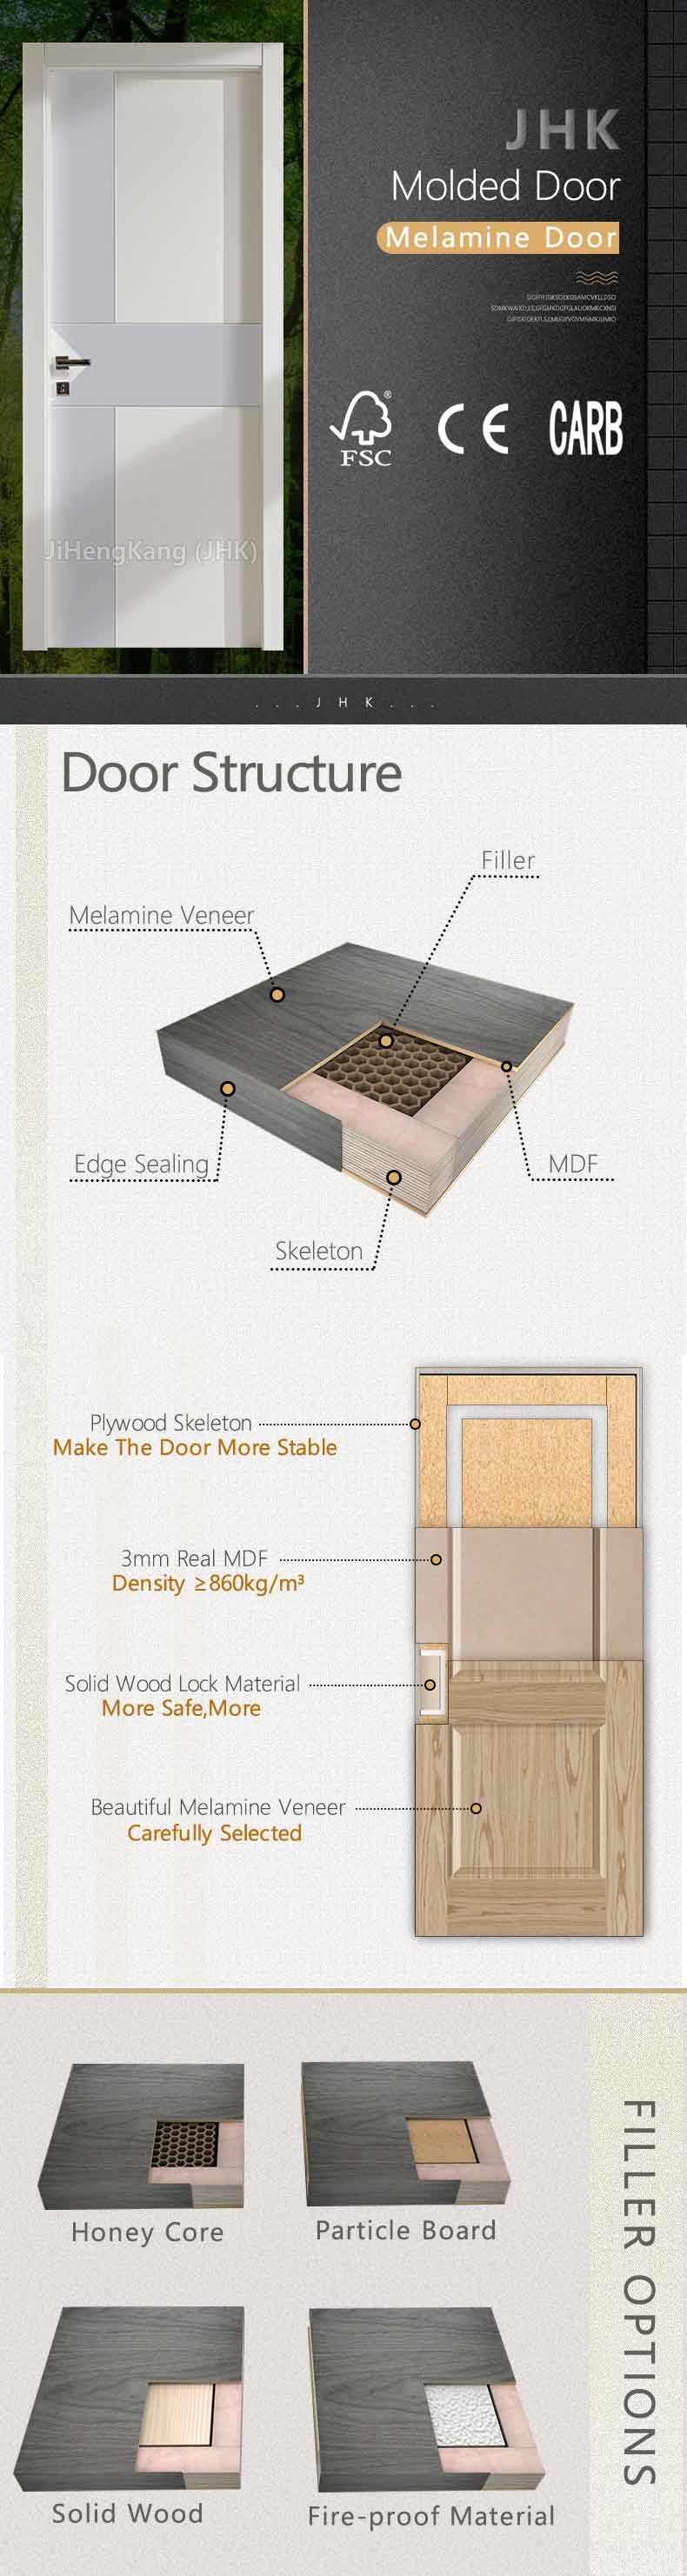 Jhk Exterior Building Back Door Particle Material Timber Melamine Door